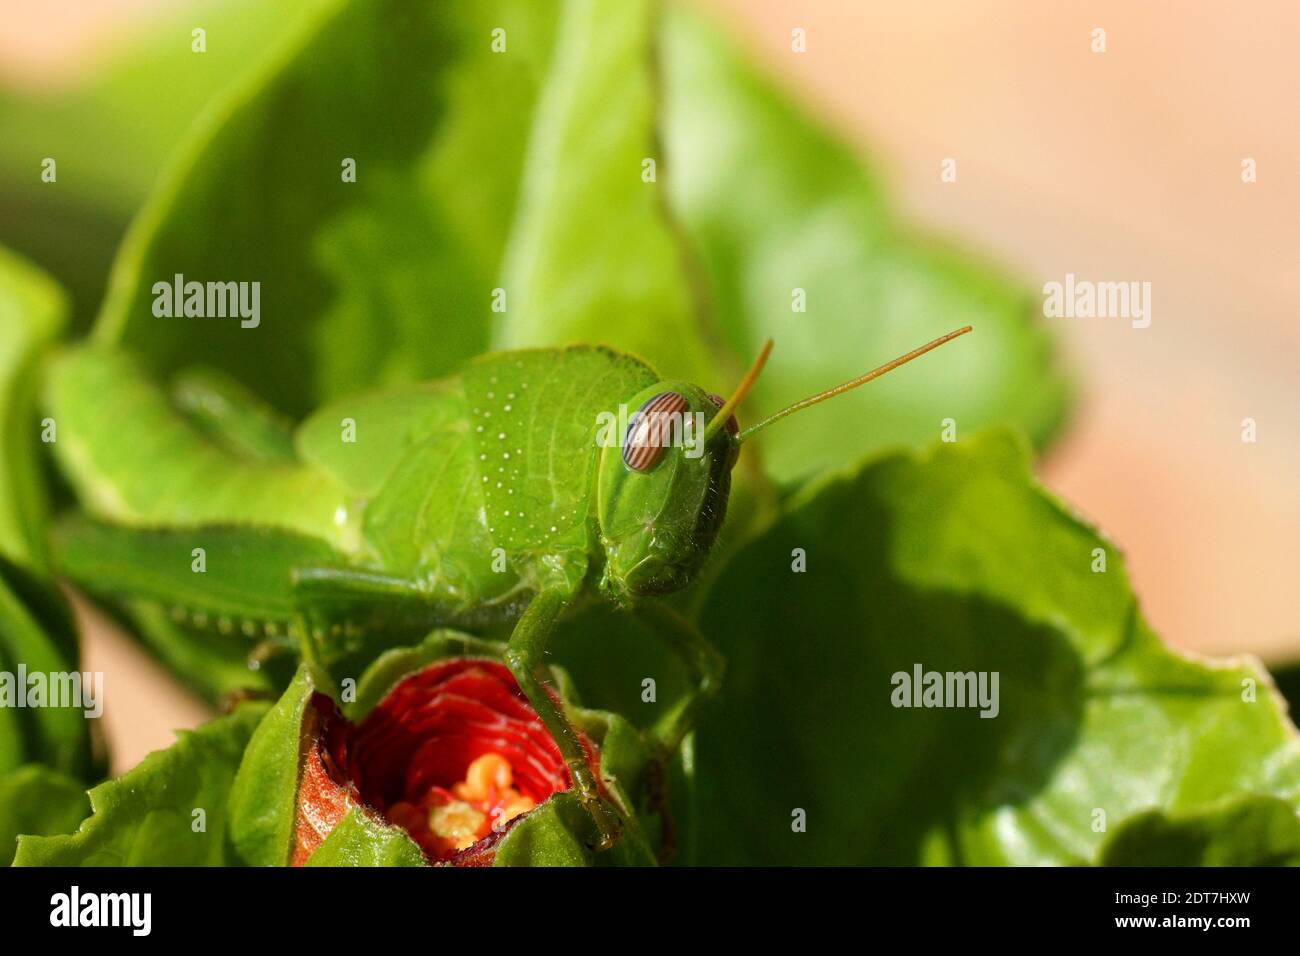 Anacridium aegyptium, the Egyptian grasshopper or Egyptian locust nymph on hibiscus bud. Grasshopper on a leaf. Stock Photo